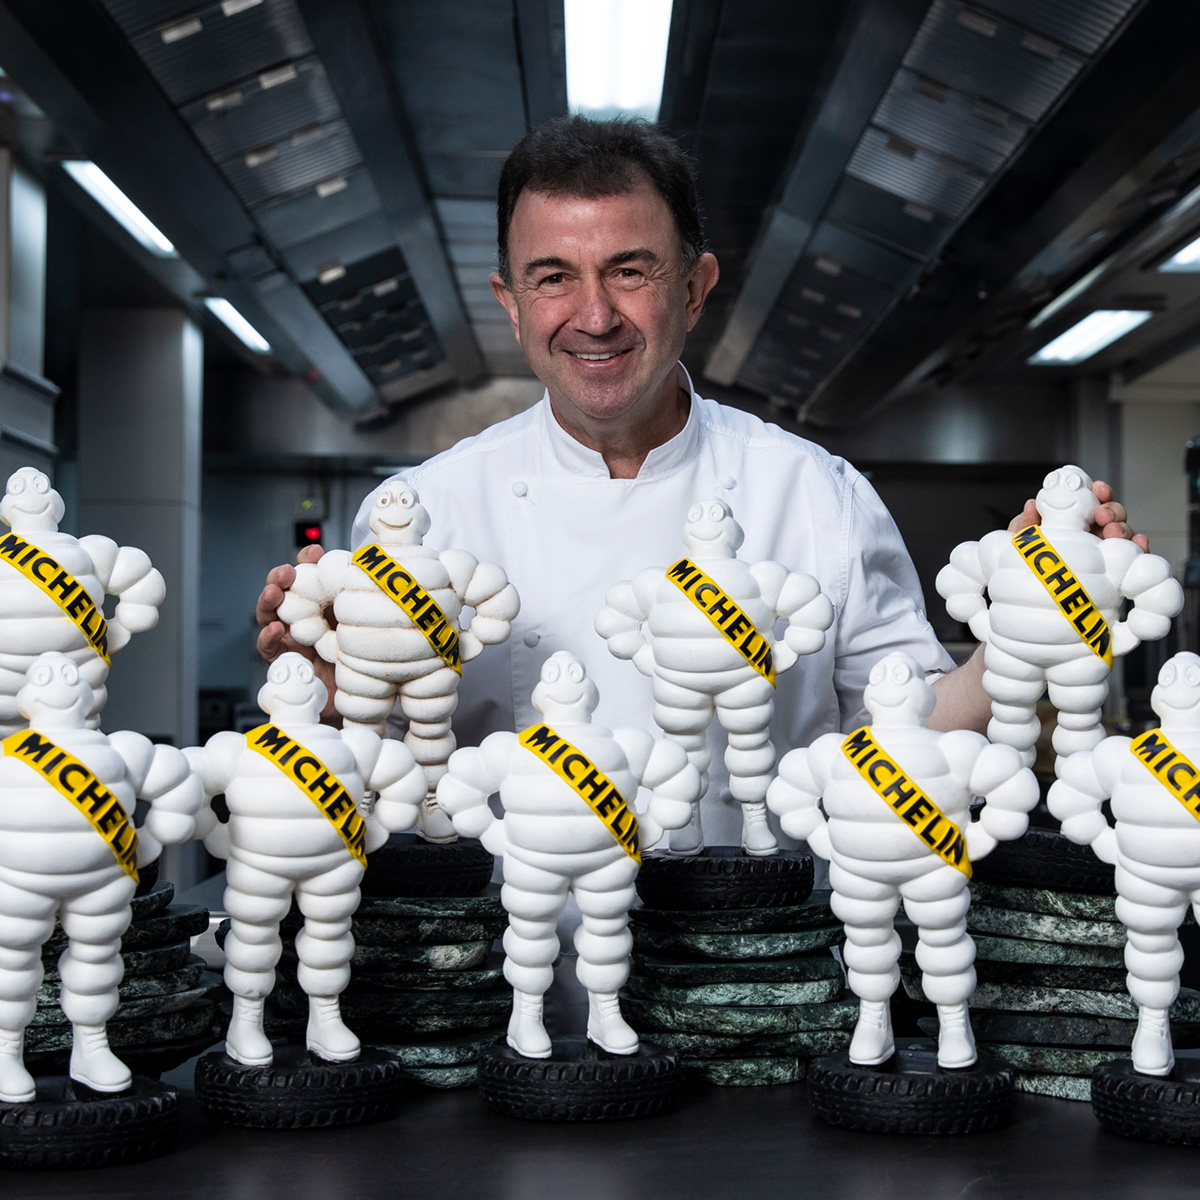 ¡Bienvenido a nuestro homenaje a los chefs más destacados de la actual selección de la Guía MICHELIN España! Empezamos por el que más Estrellas MICHELIN acumula en sus restaurantes, ¿sabrías decirnos quién es el más laureado en nuestro país?